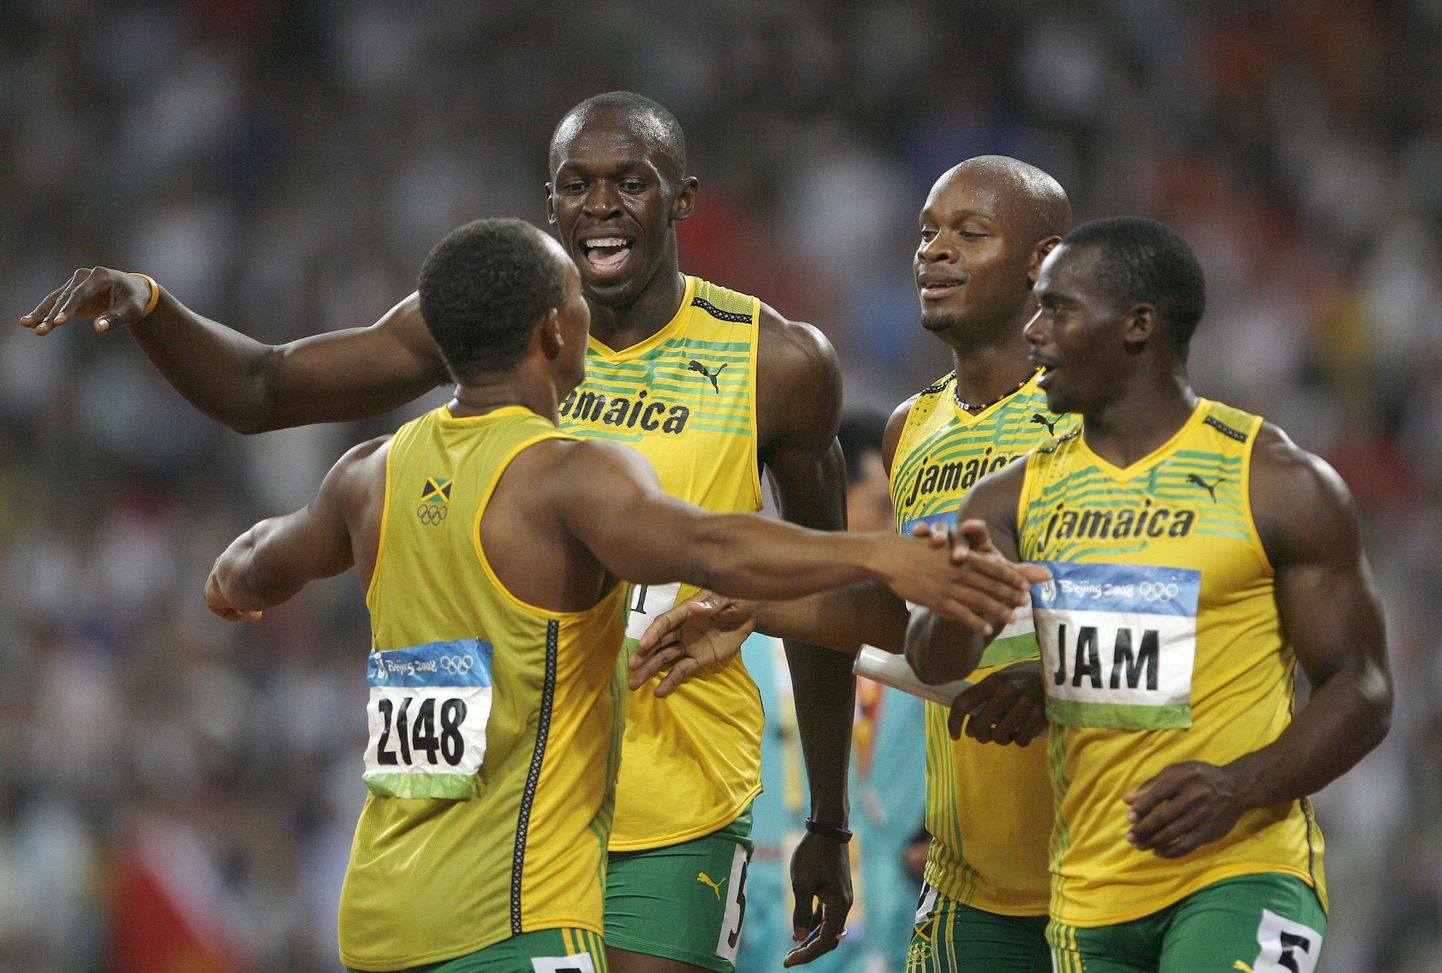 Jamaica teatenelik 2008. aasta Pekingi olümpiamängudel.